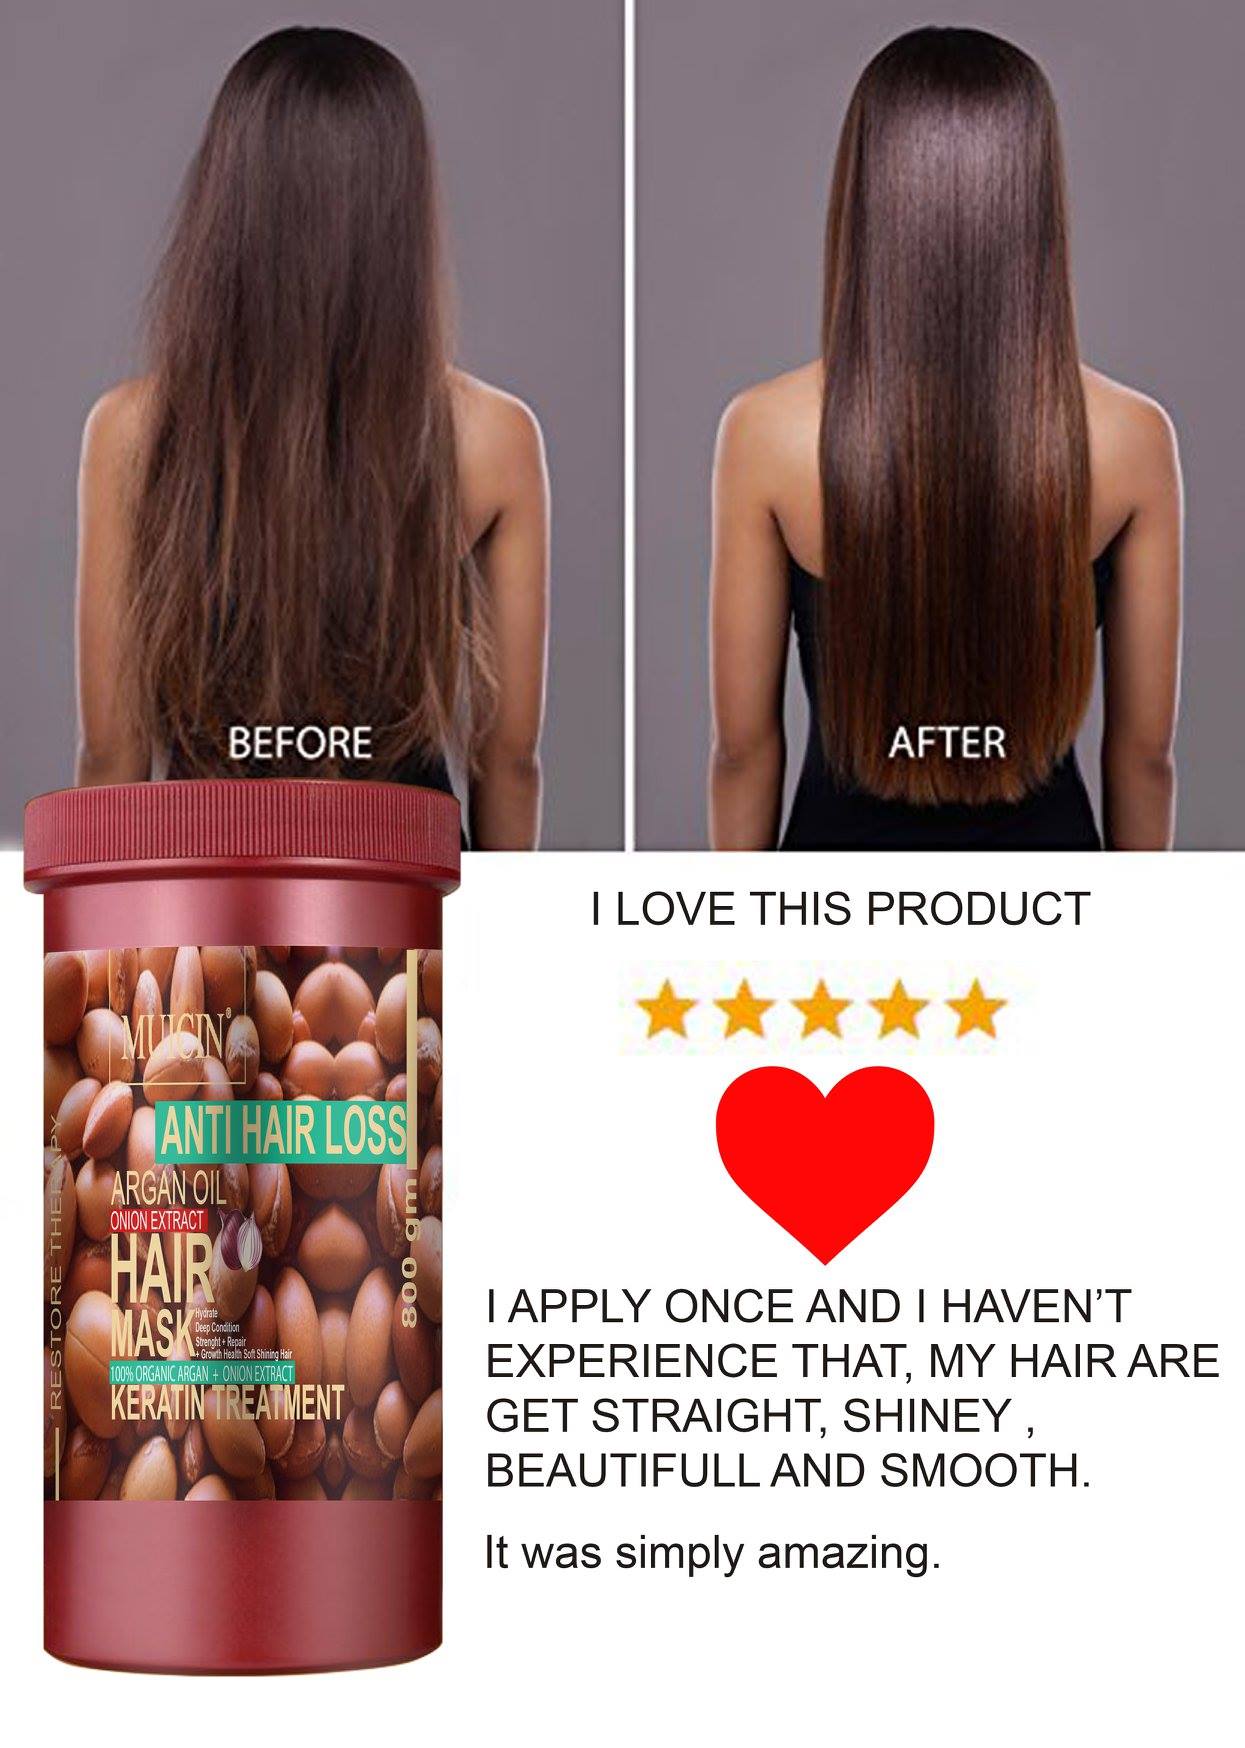 MUICIN - Onion Extract & Argan Oil Hair Mask - 800g